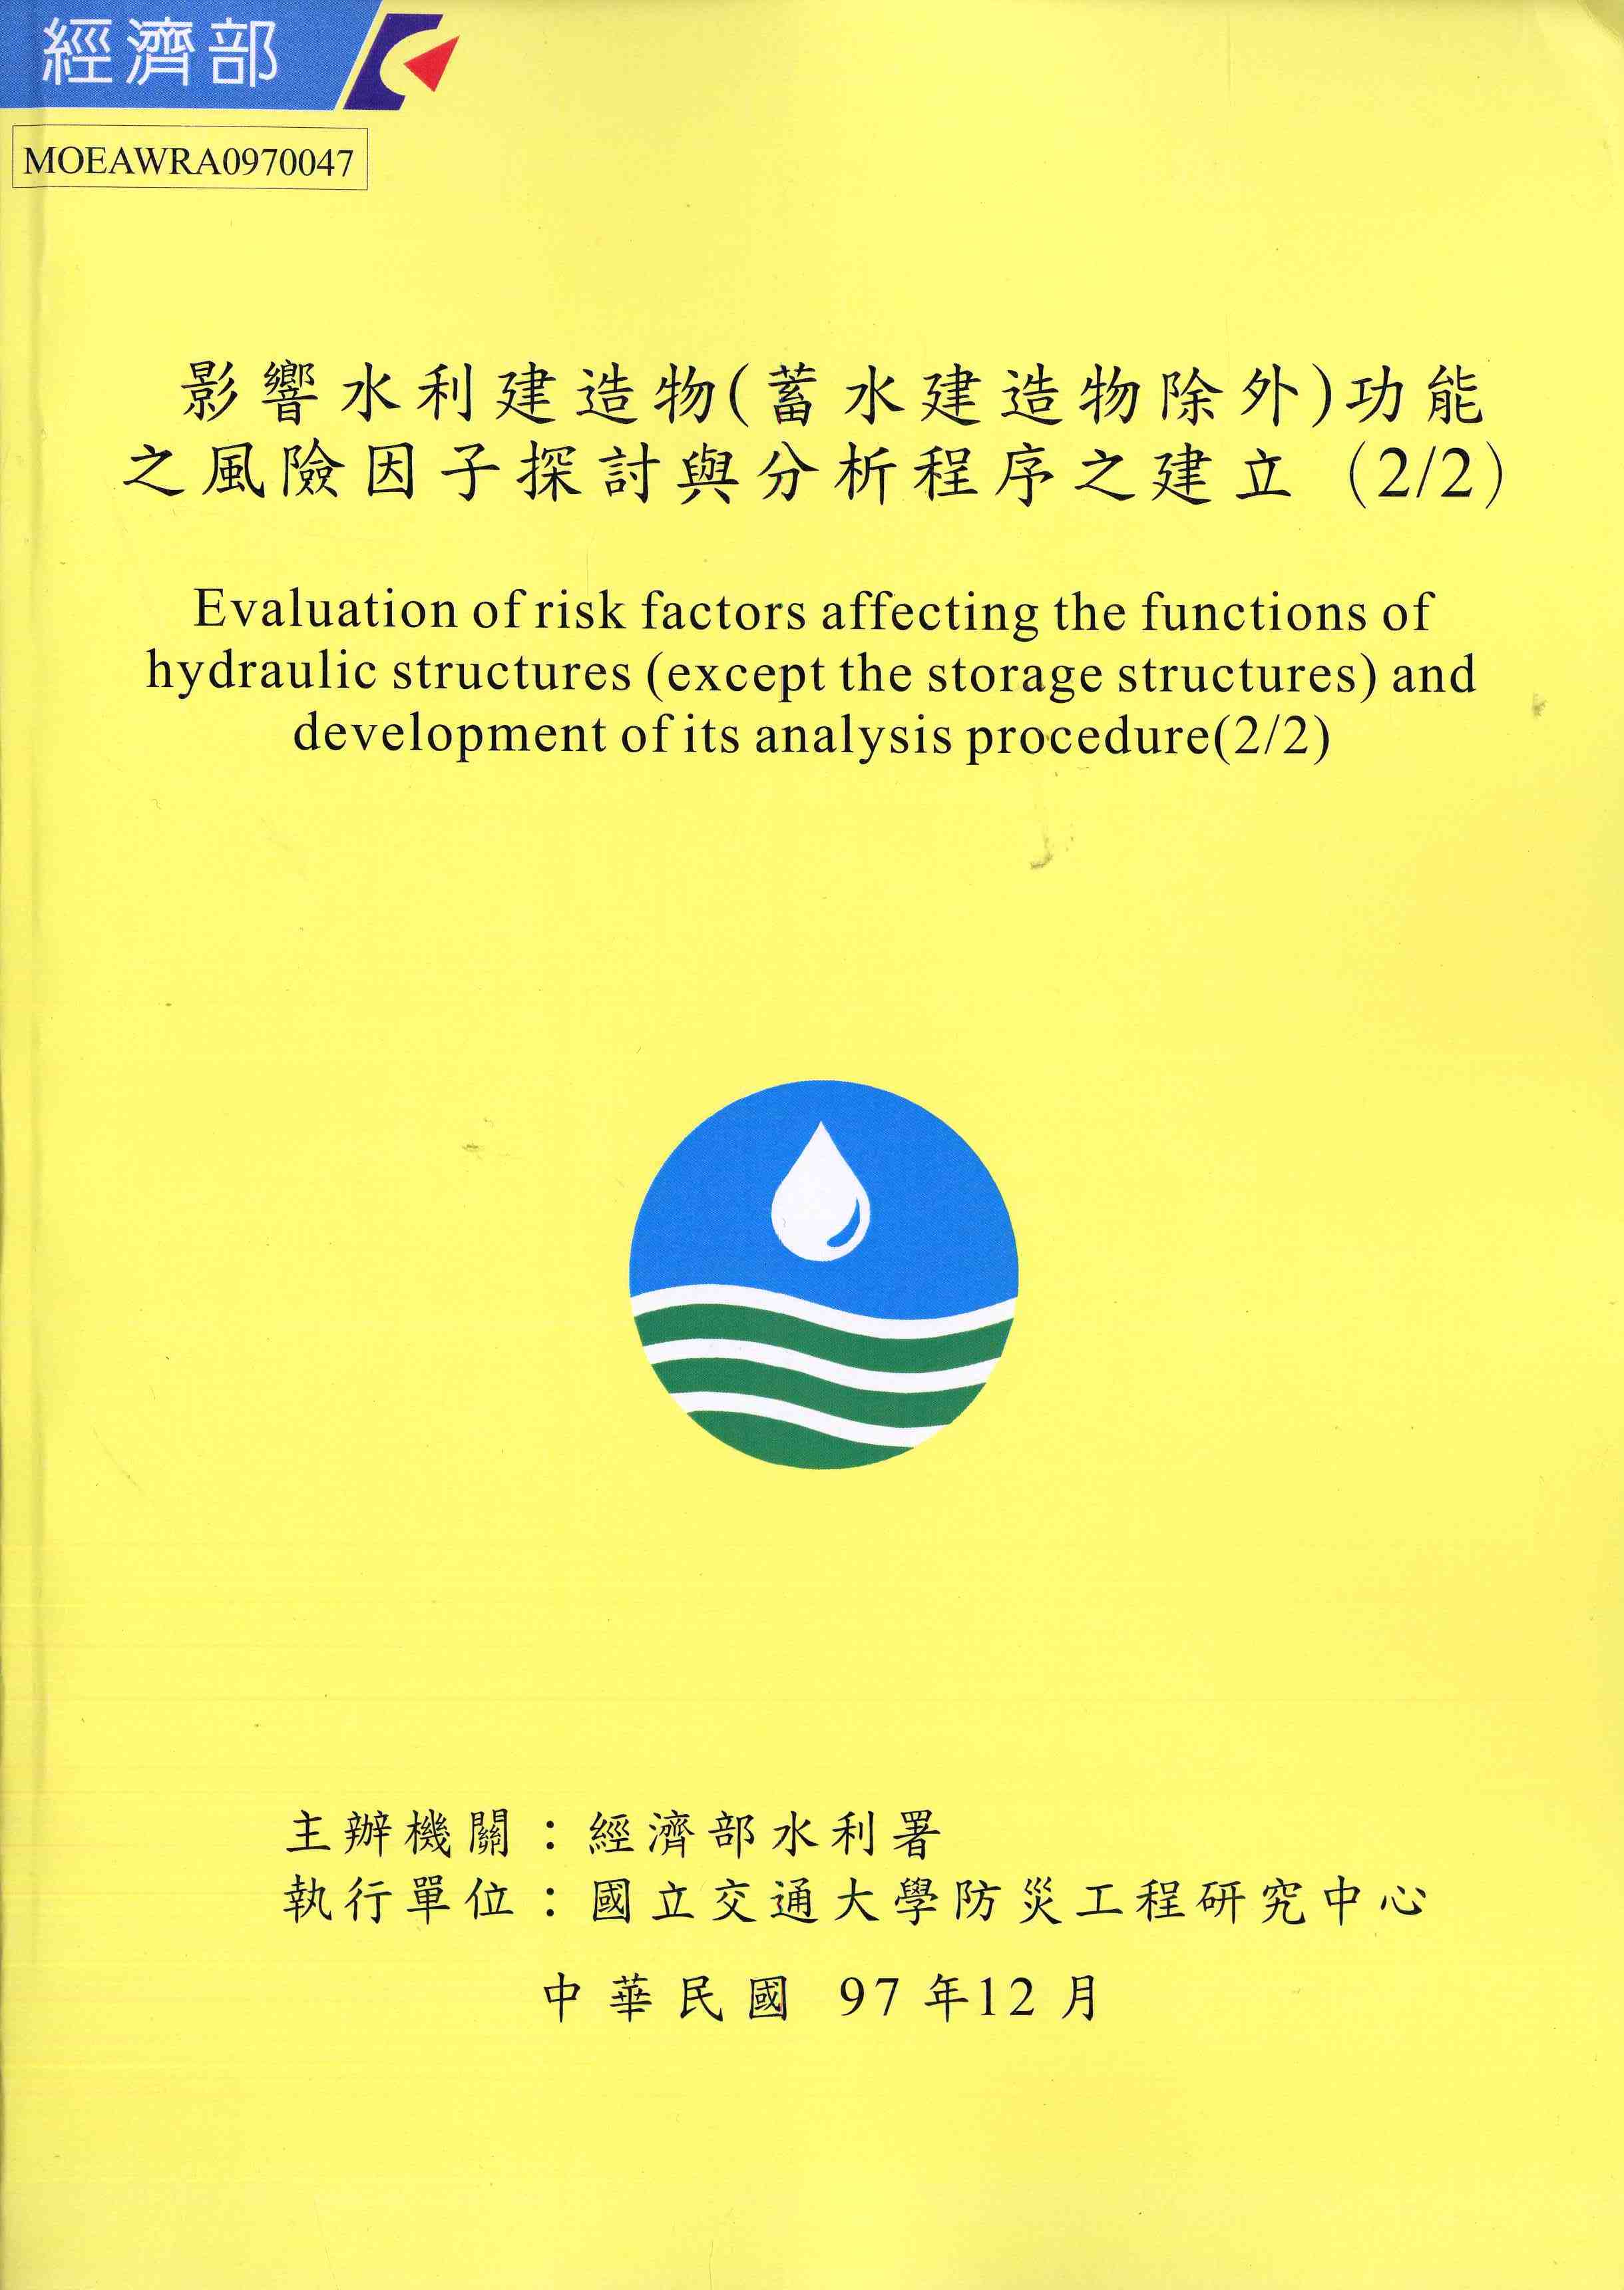 影響水利建造物(蓄水建造物除外)功能之風險因子探討與分析程序之建立（2/2）